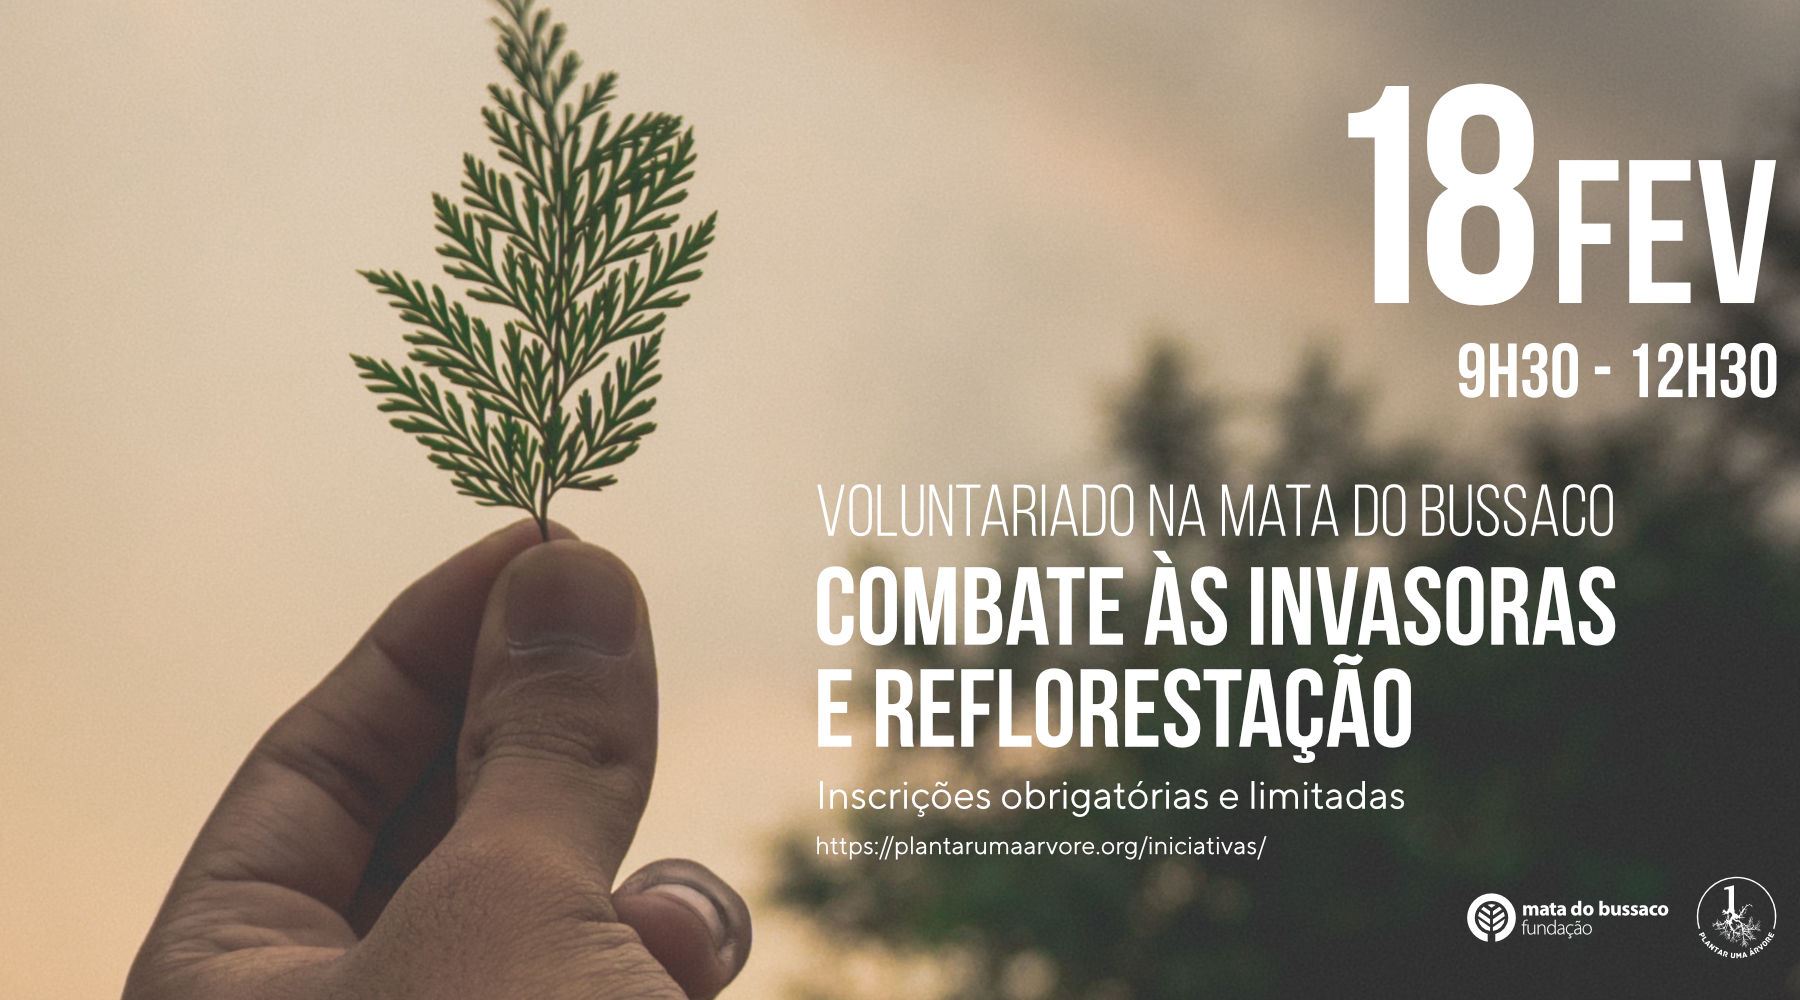 Voluntariado – Combate às invasoras e reflorestação